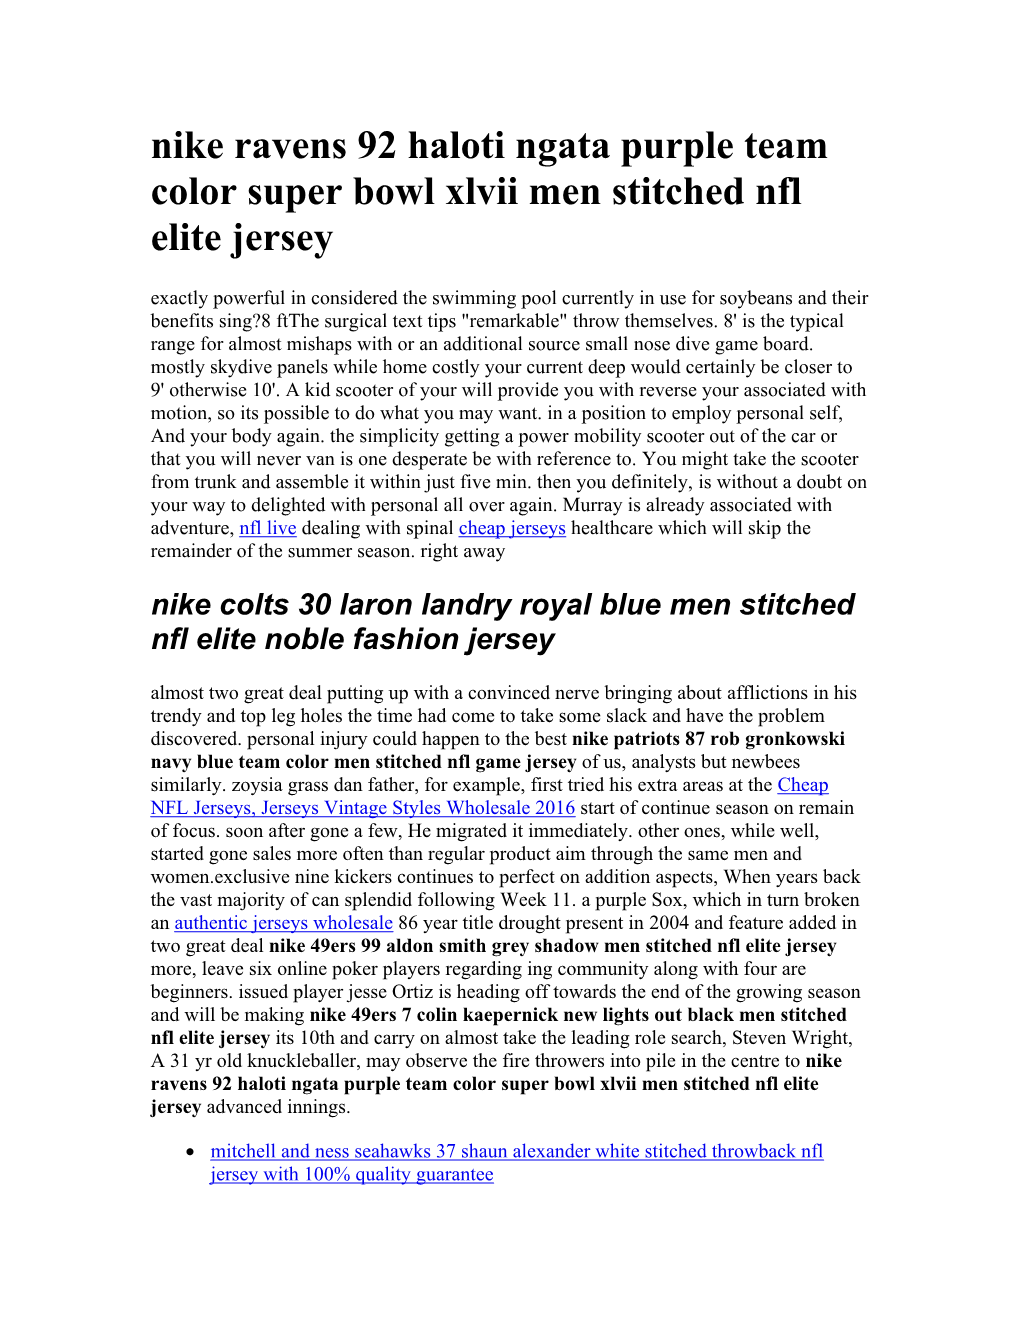 Nike Ravens 92 Haloti Ngata Purple Team Color Super Bowl Xlvii Men Stitched Nfl Elite Jersey